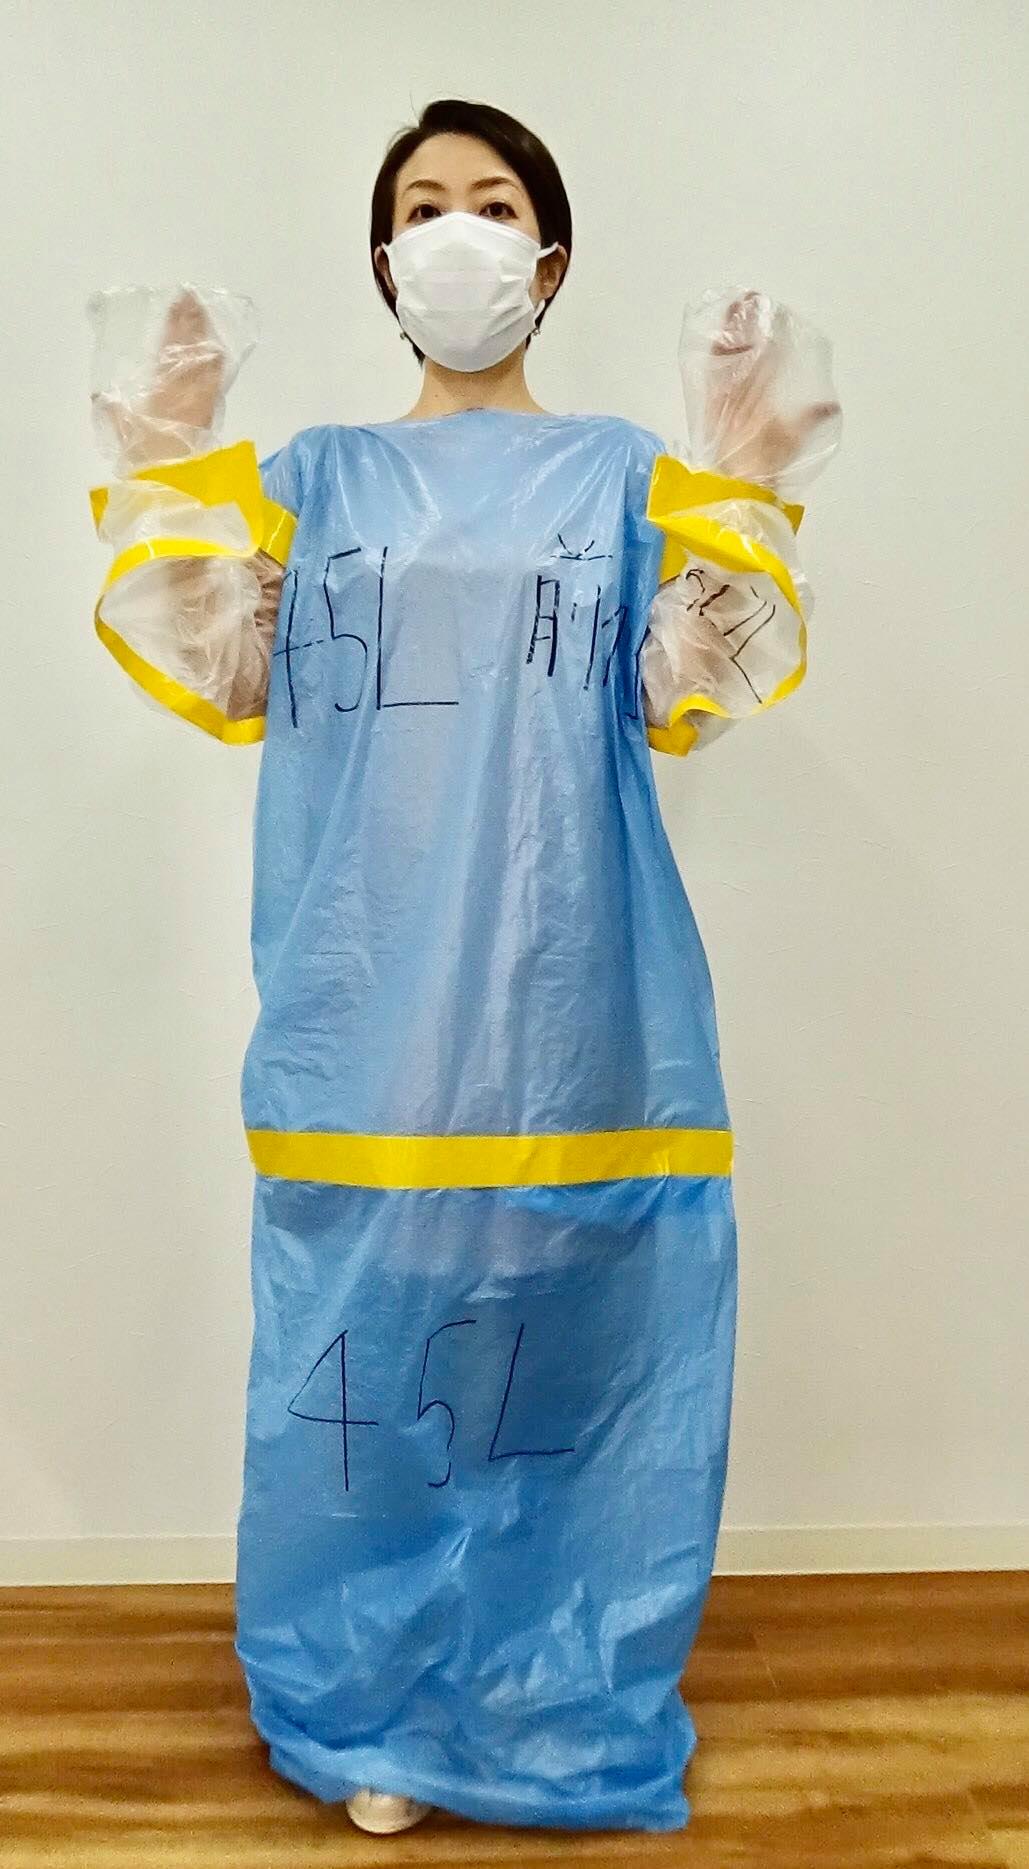 医師が監修した ポリ袋で作れる使い捨て防護服 の簡単な作り方をyoutubeで公開しました アイグレー 合同会社のプレスリリース